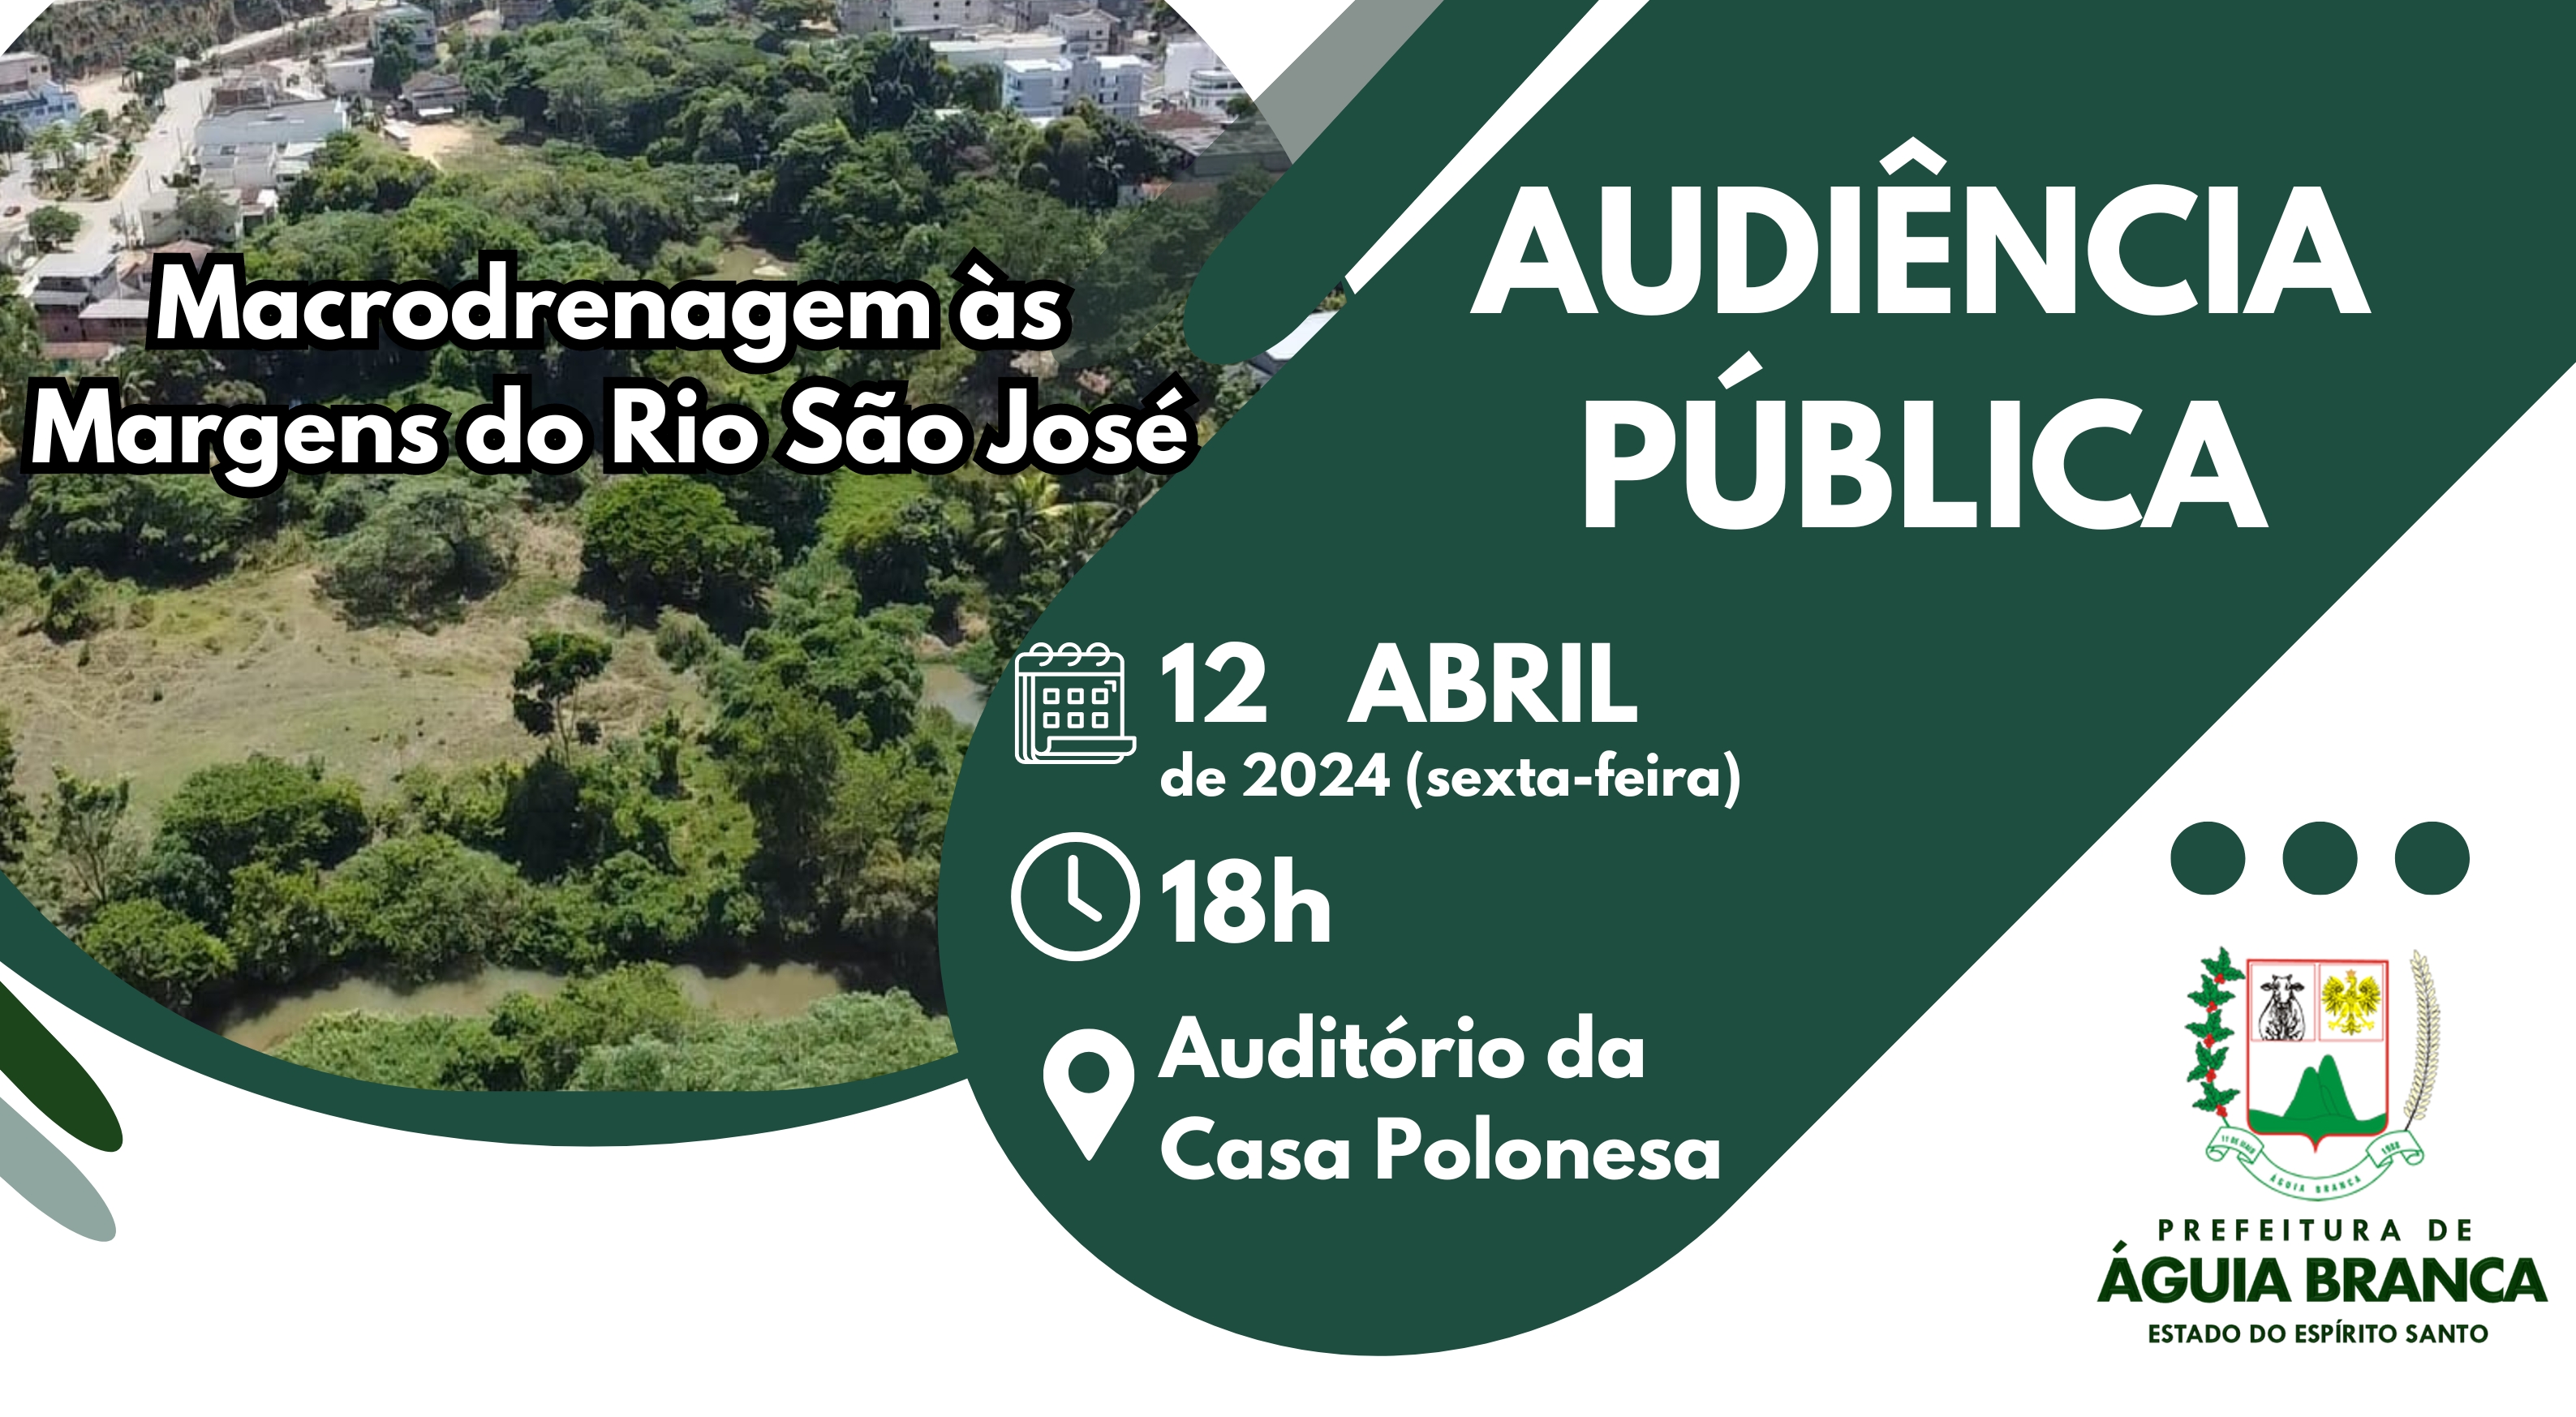 Audiência pública sobre a macrodrenagem às margens do rio São José